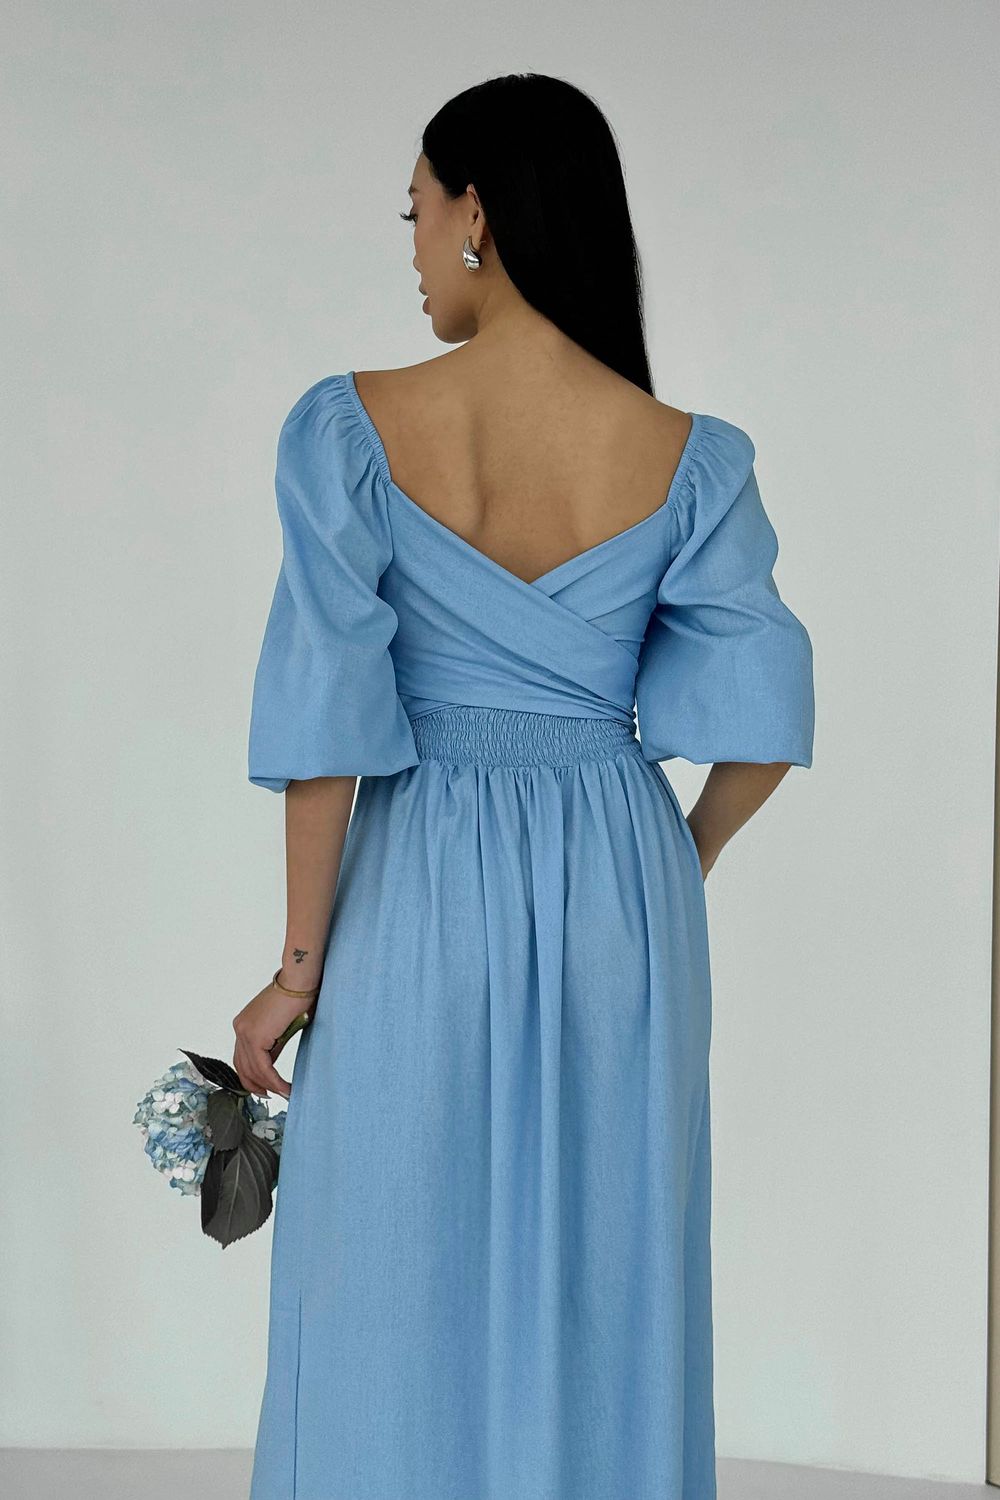 Дизайнерское летнее платье из льна голубого цвета - фото